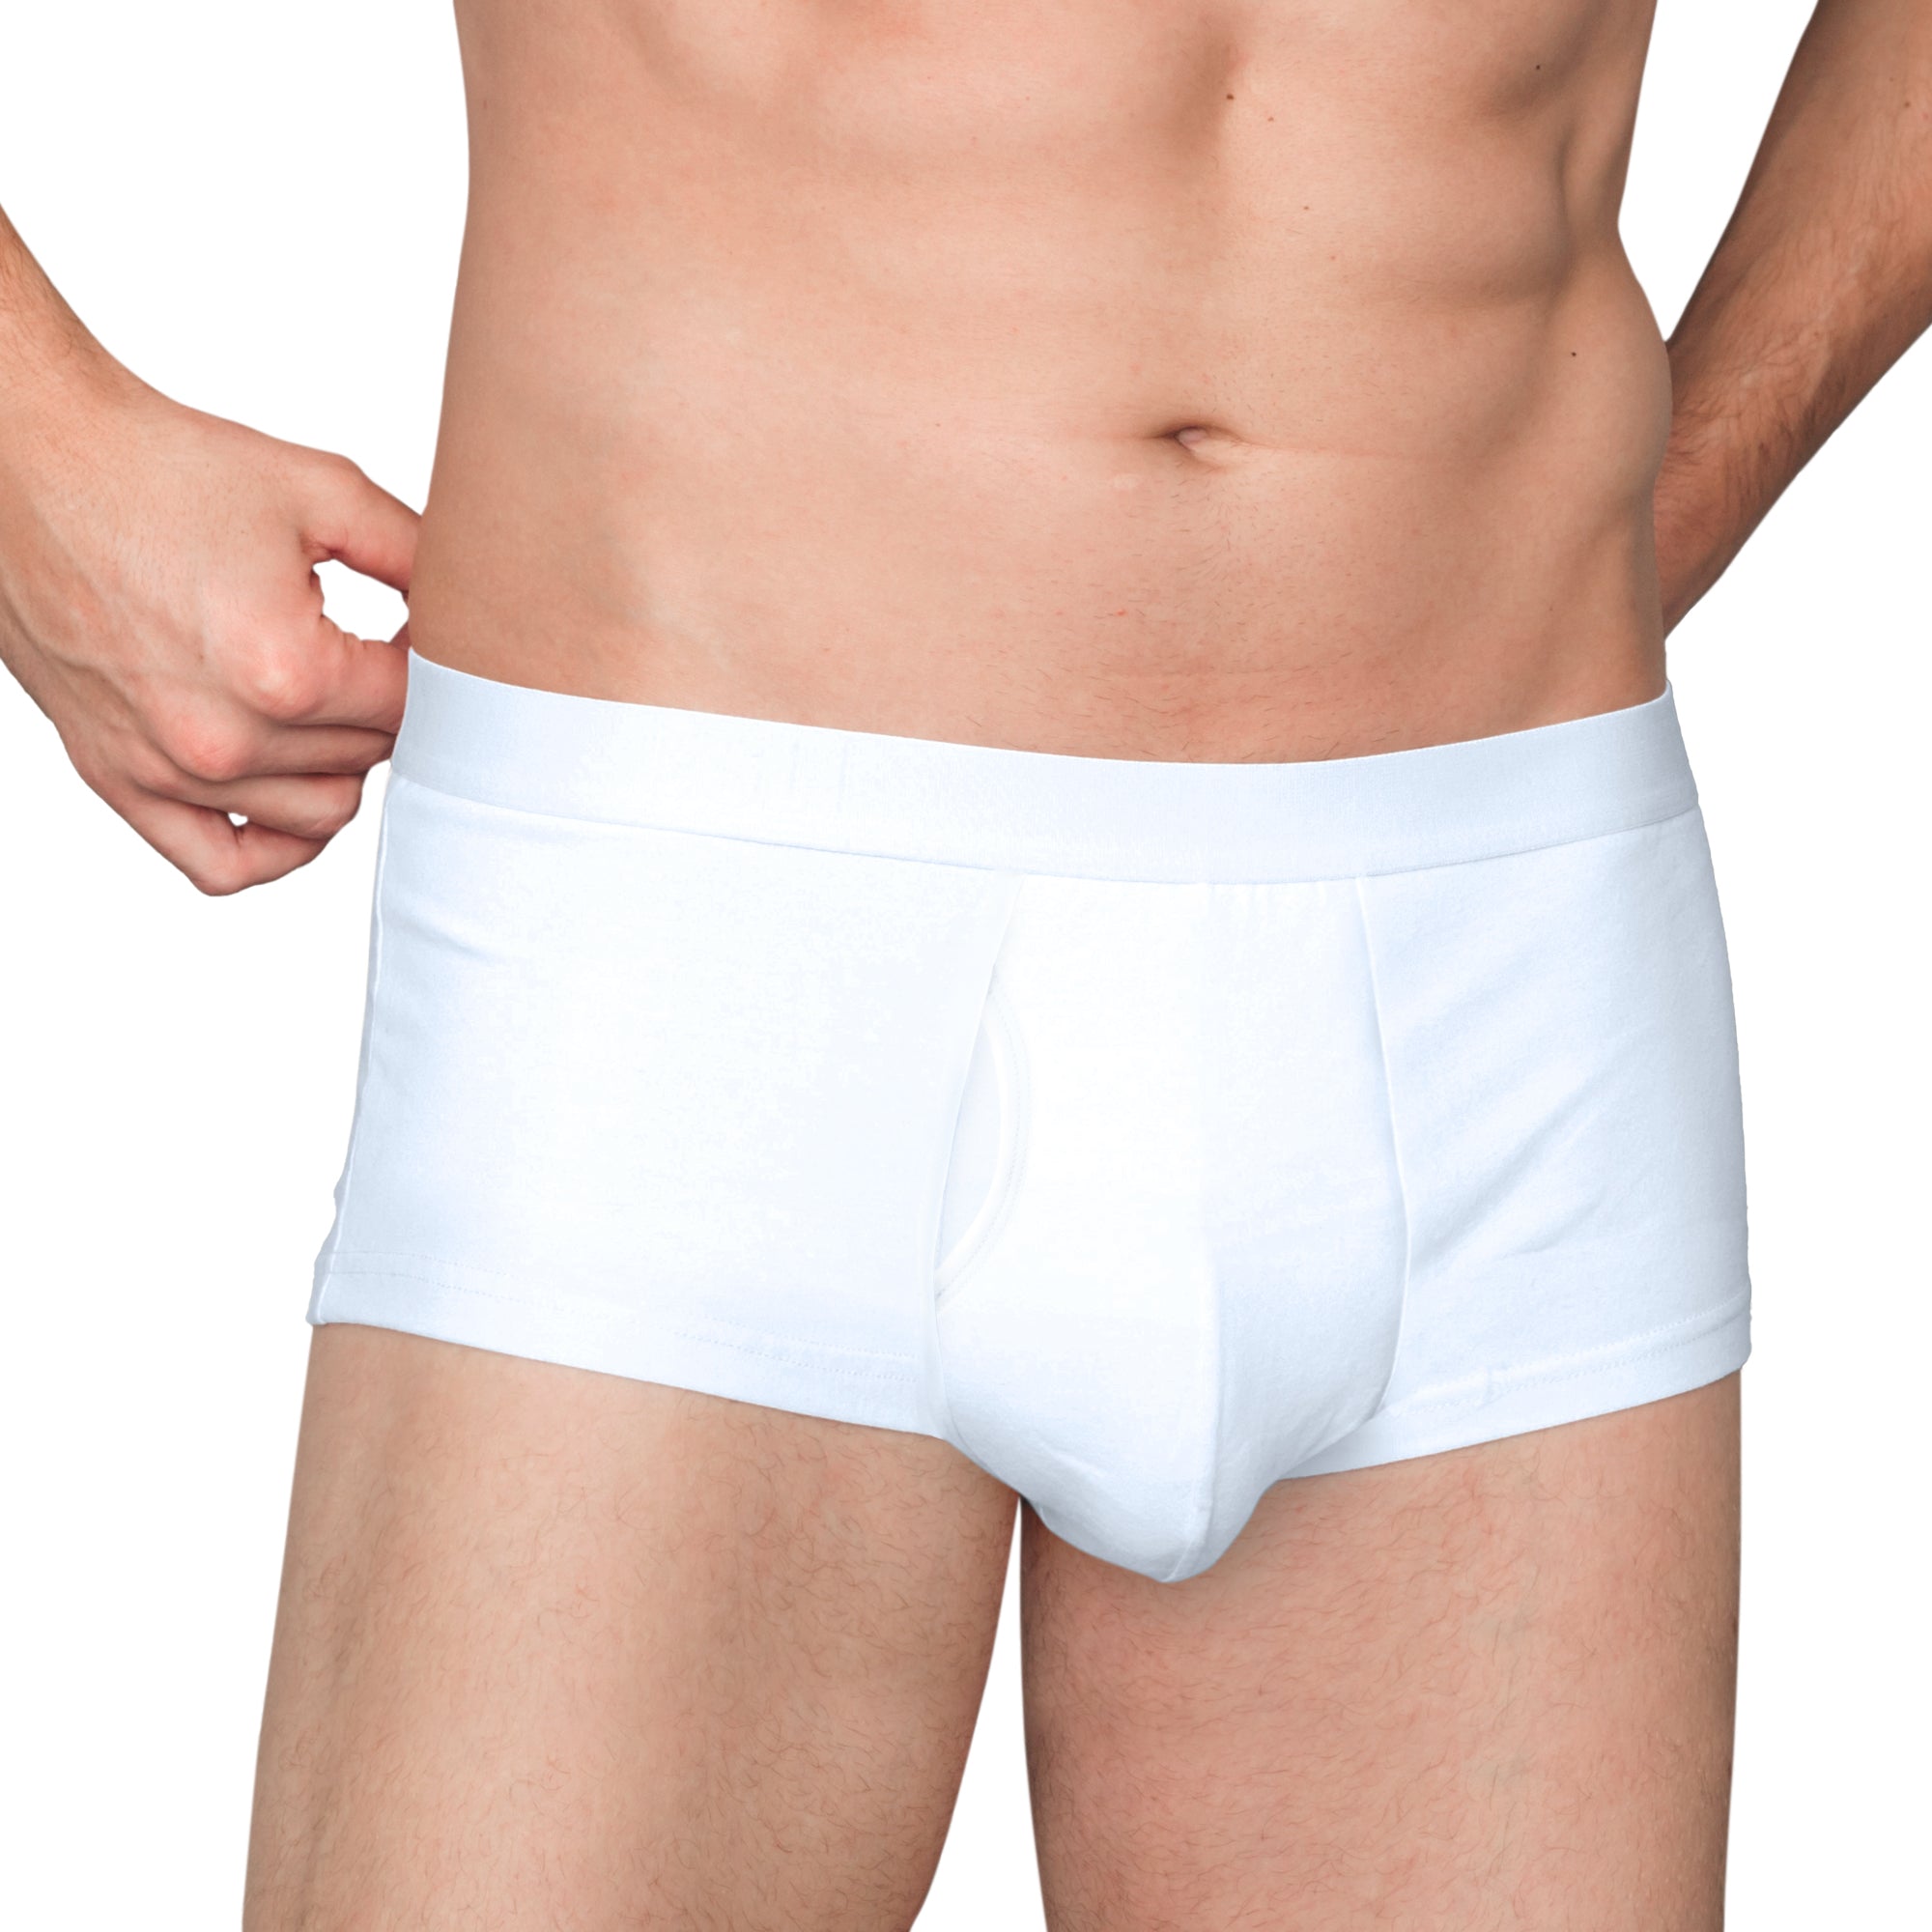 Man Boxers Brand Individuation Customize Underwear Fashion Briefs